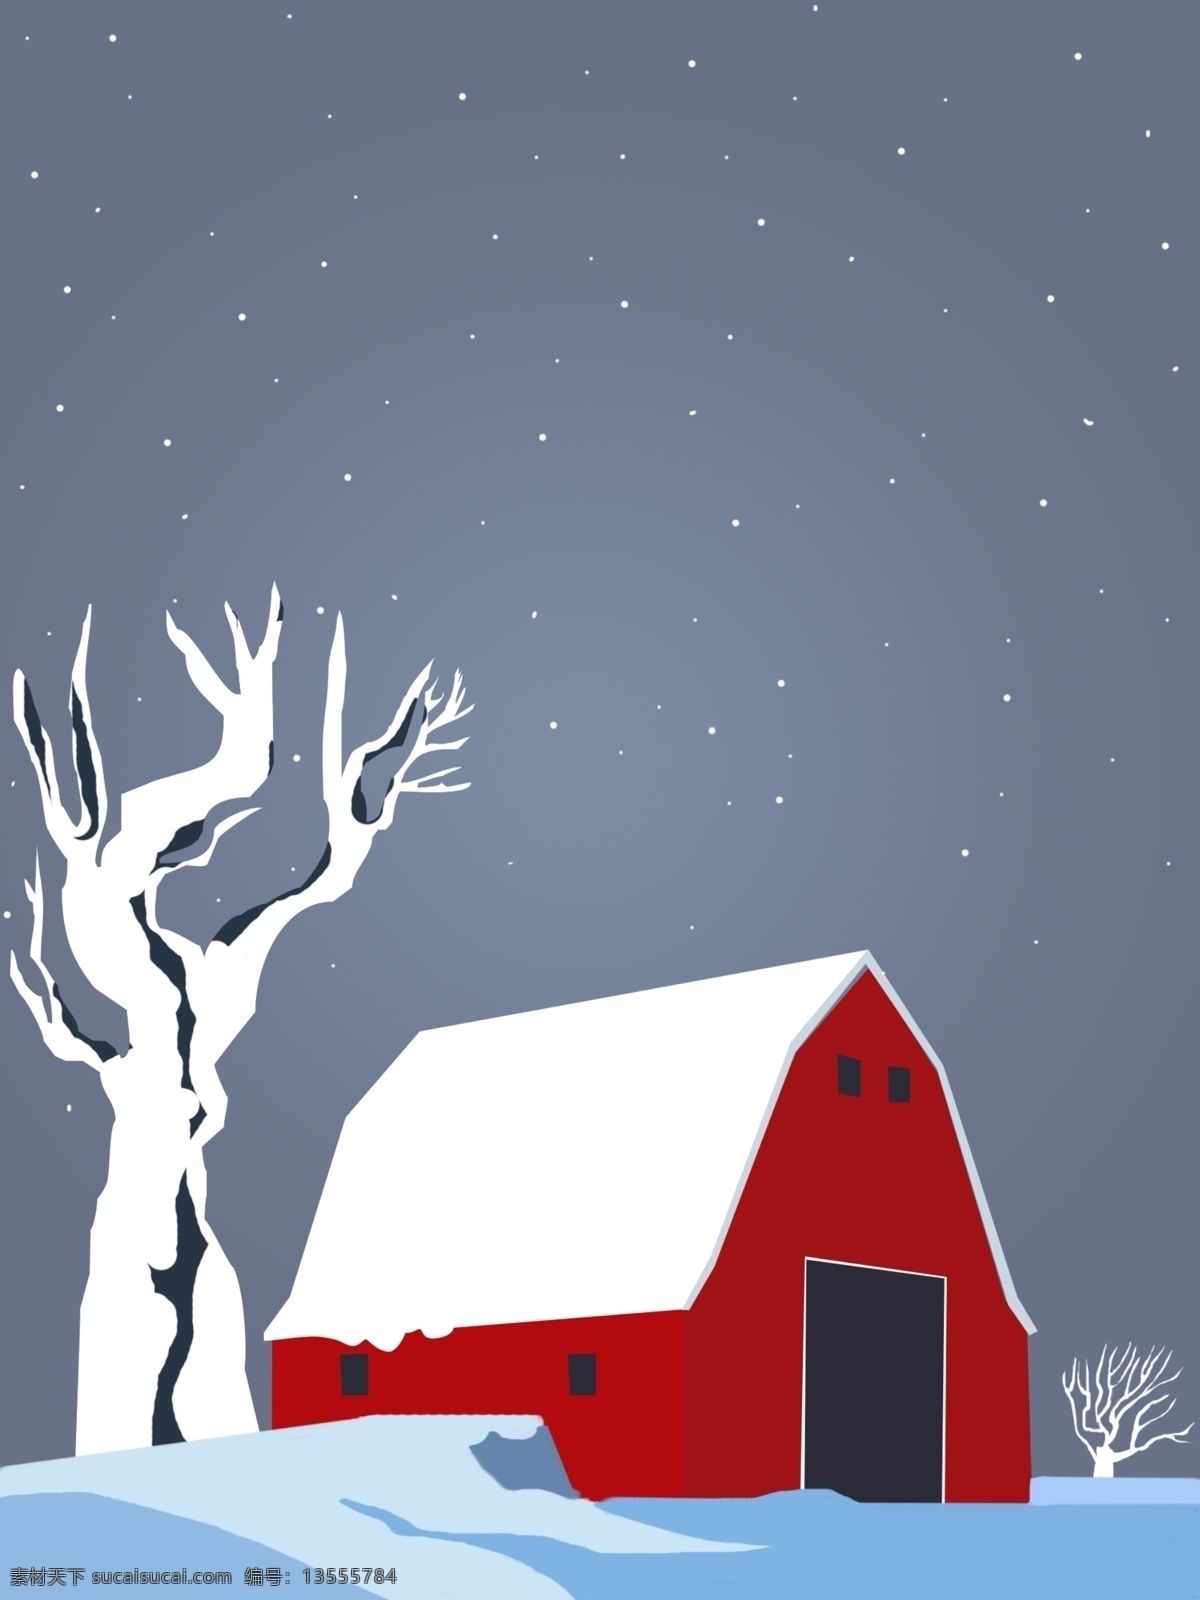 简约 雪 中 红色 房子 冬季 背景 雪花 冬天 背景素材 雪中 红色房子 雪地 冬天快乐 雪人 冬天早晨 广告背景素材